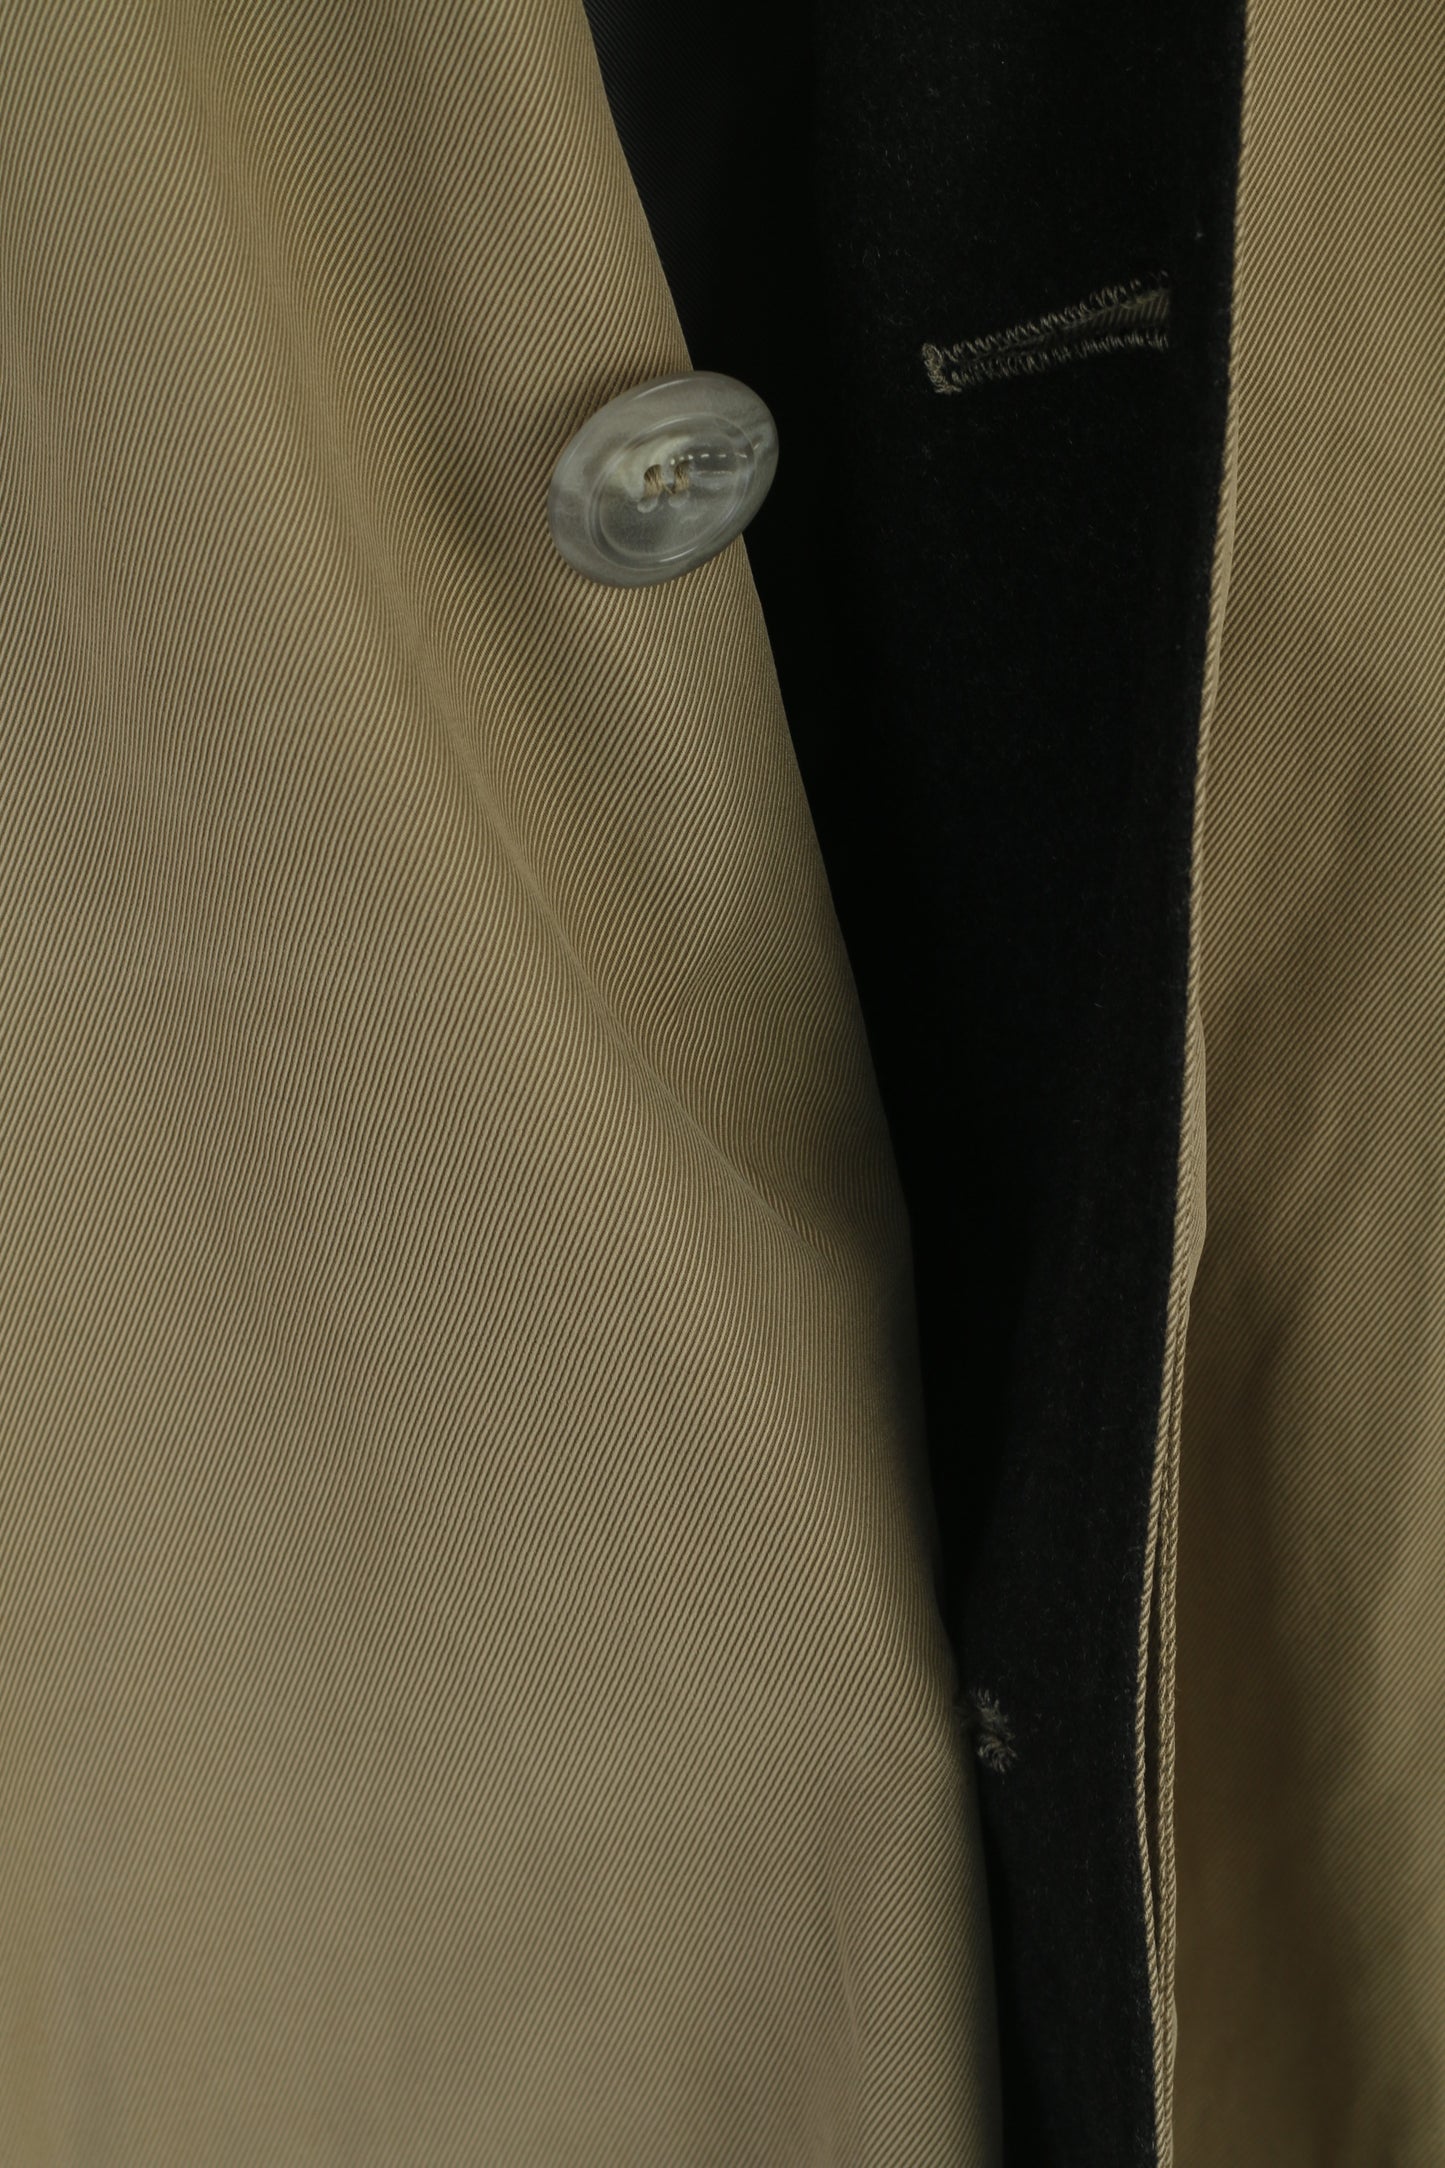 Werther International Manteau imperméable vintage doublé en coton kaki pour homme 52 L